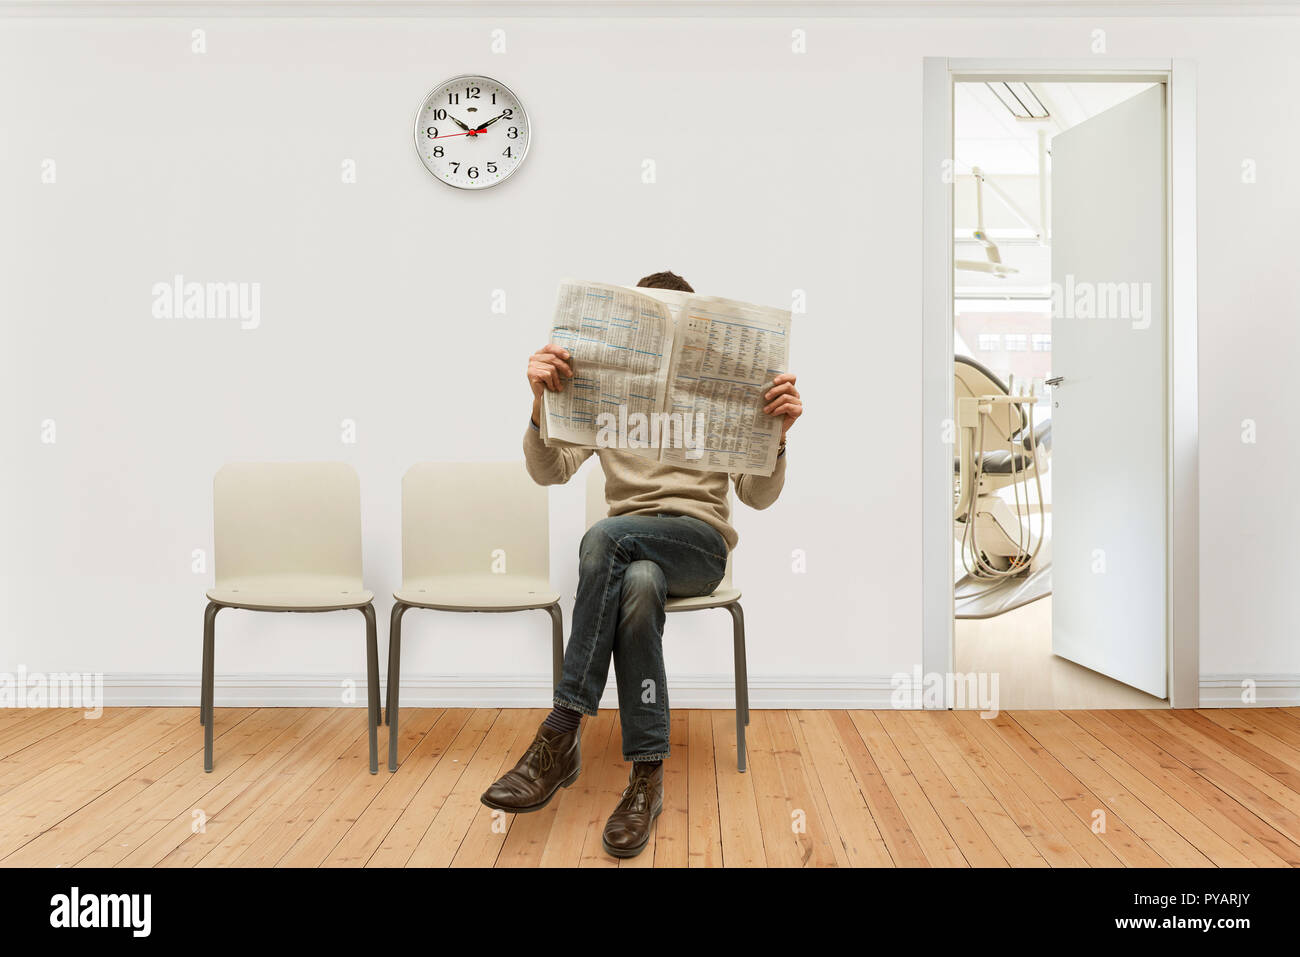 Medical sala di attesa con una persona seduta quotidiano di lettura Foto Stock